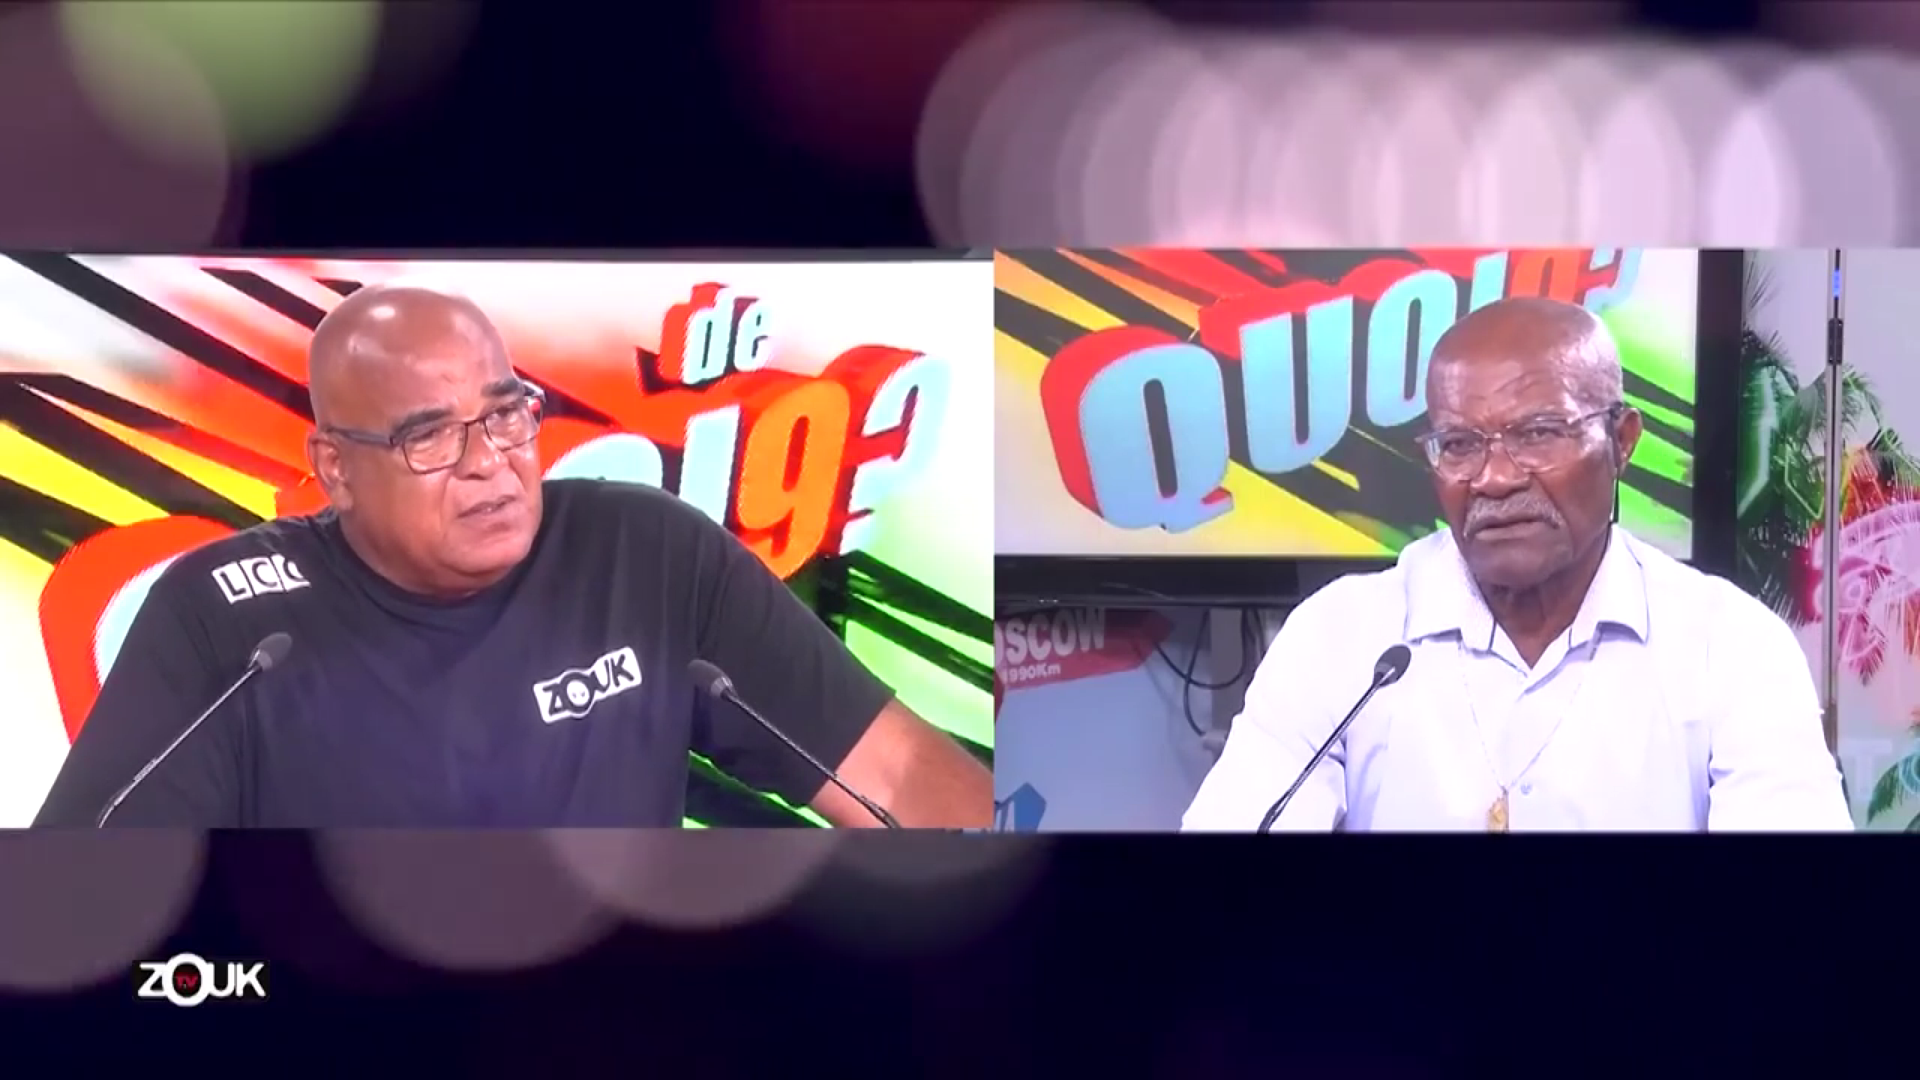 [Vidéo] Onews Martinique .René ADEMAR Invité de Quoi de 9 Zouk Tv pour parler de la Pêche